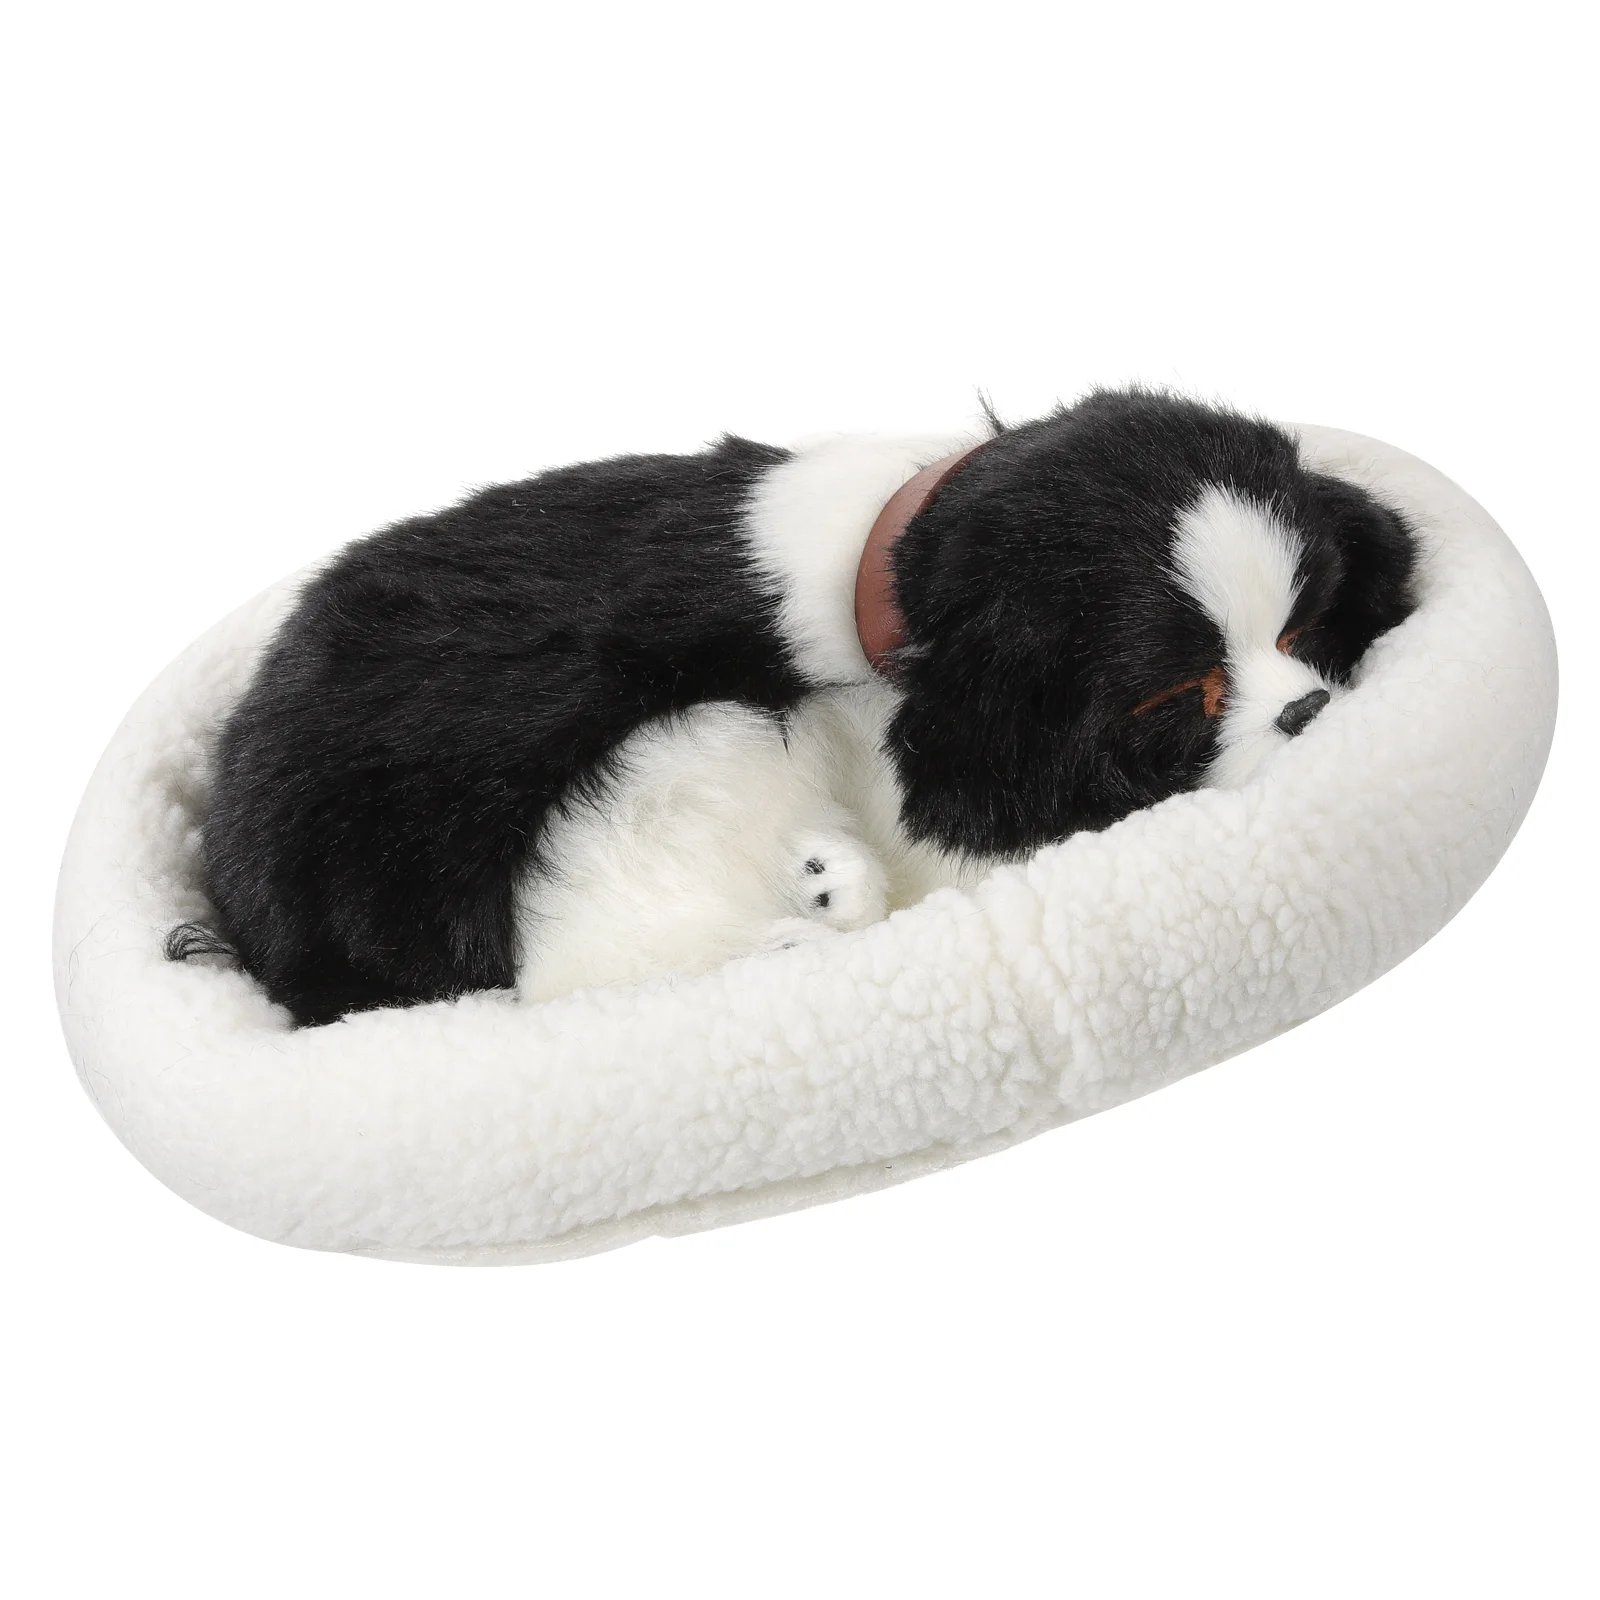 

Stuffed Toy Simulation Animal Model Breathing Dog The Plush Sleeping Animals Realistic Lifelike Dogs